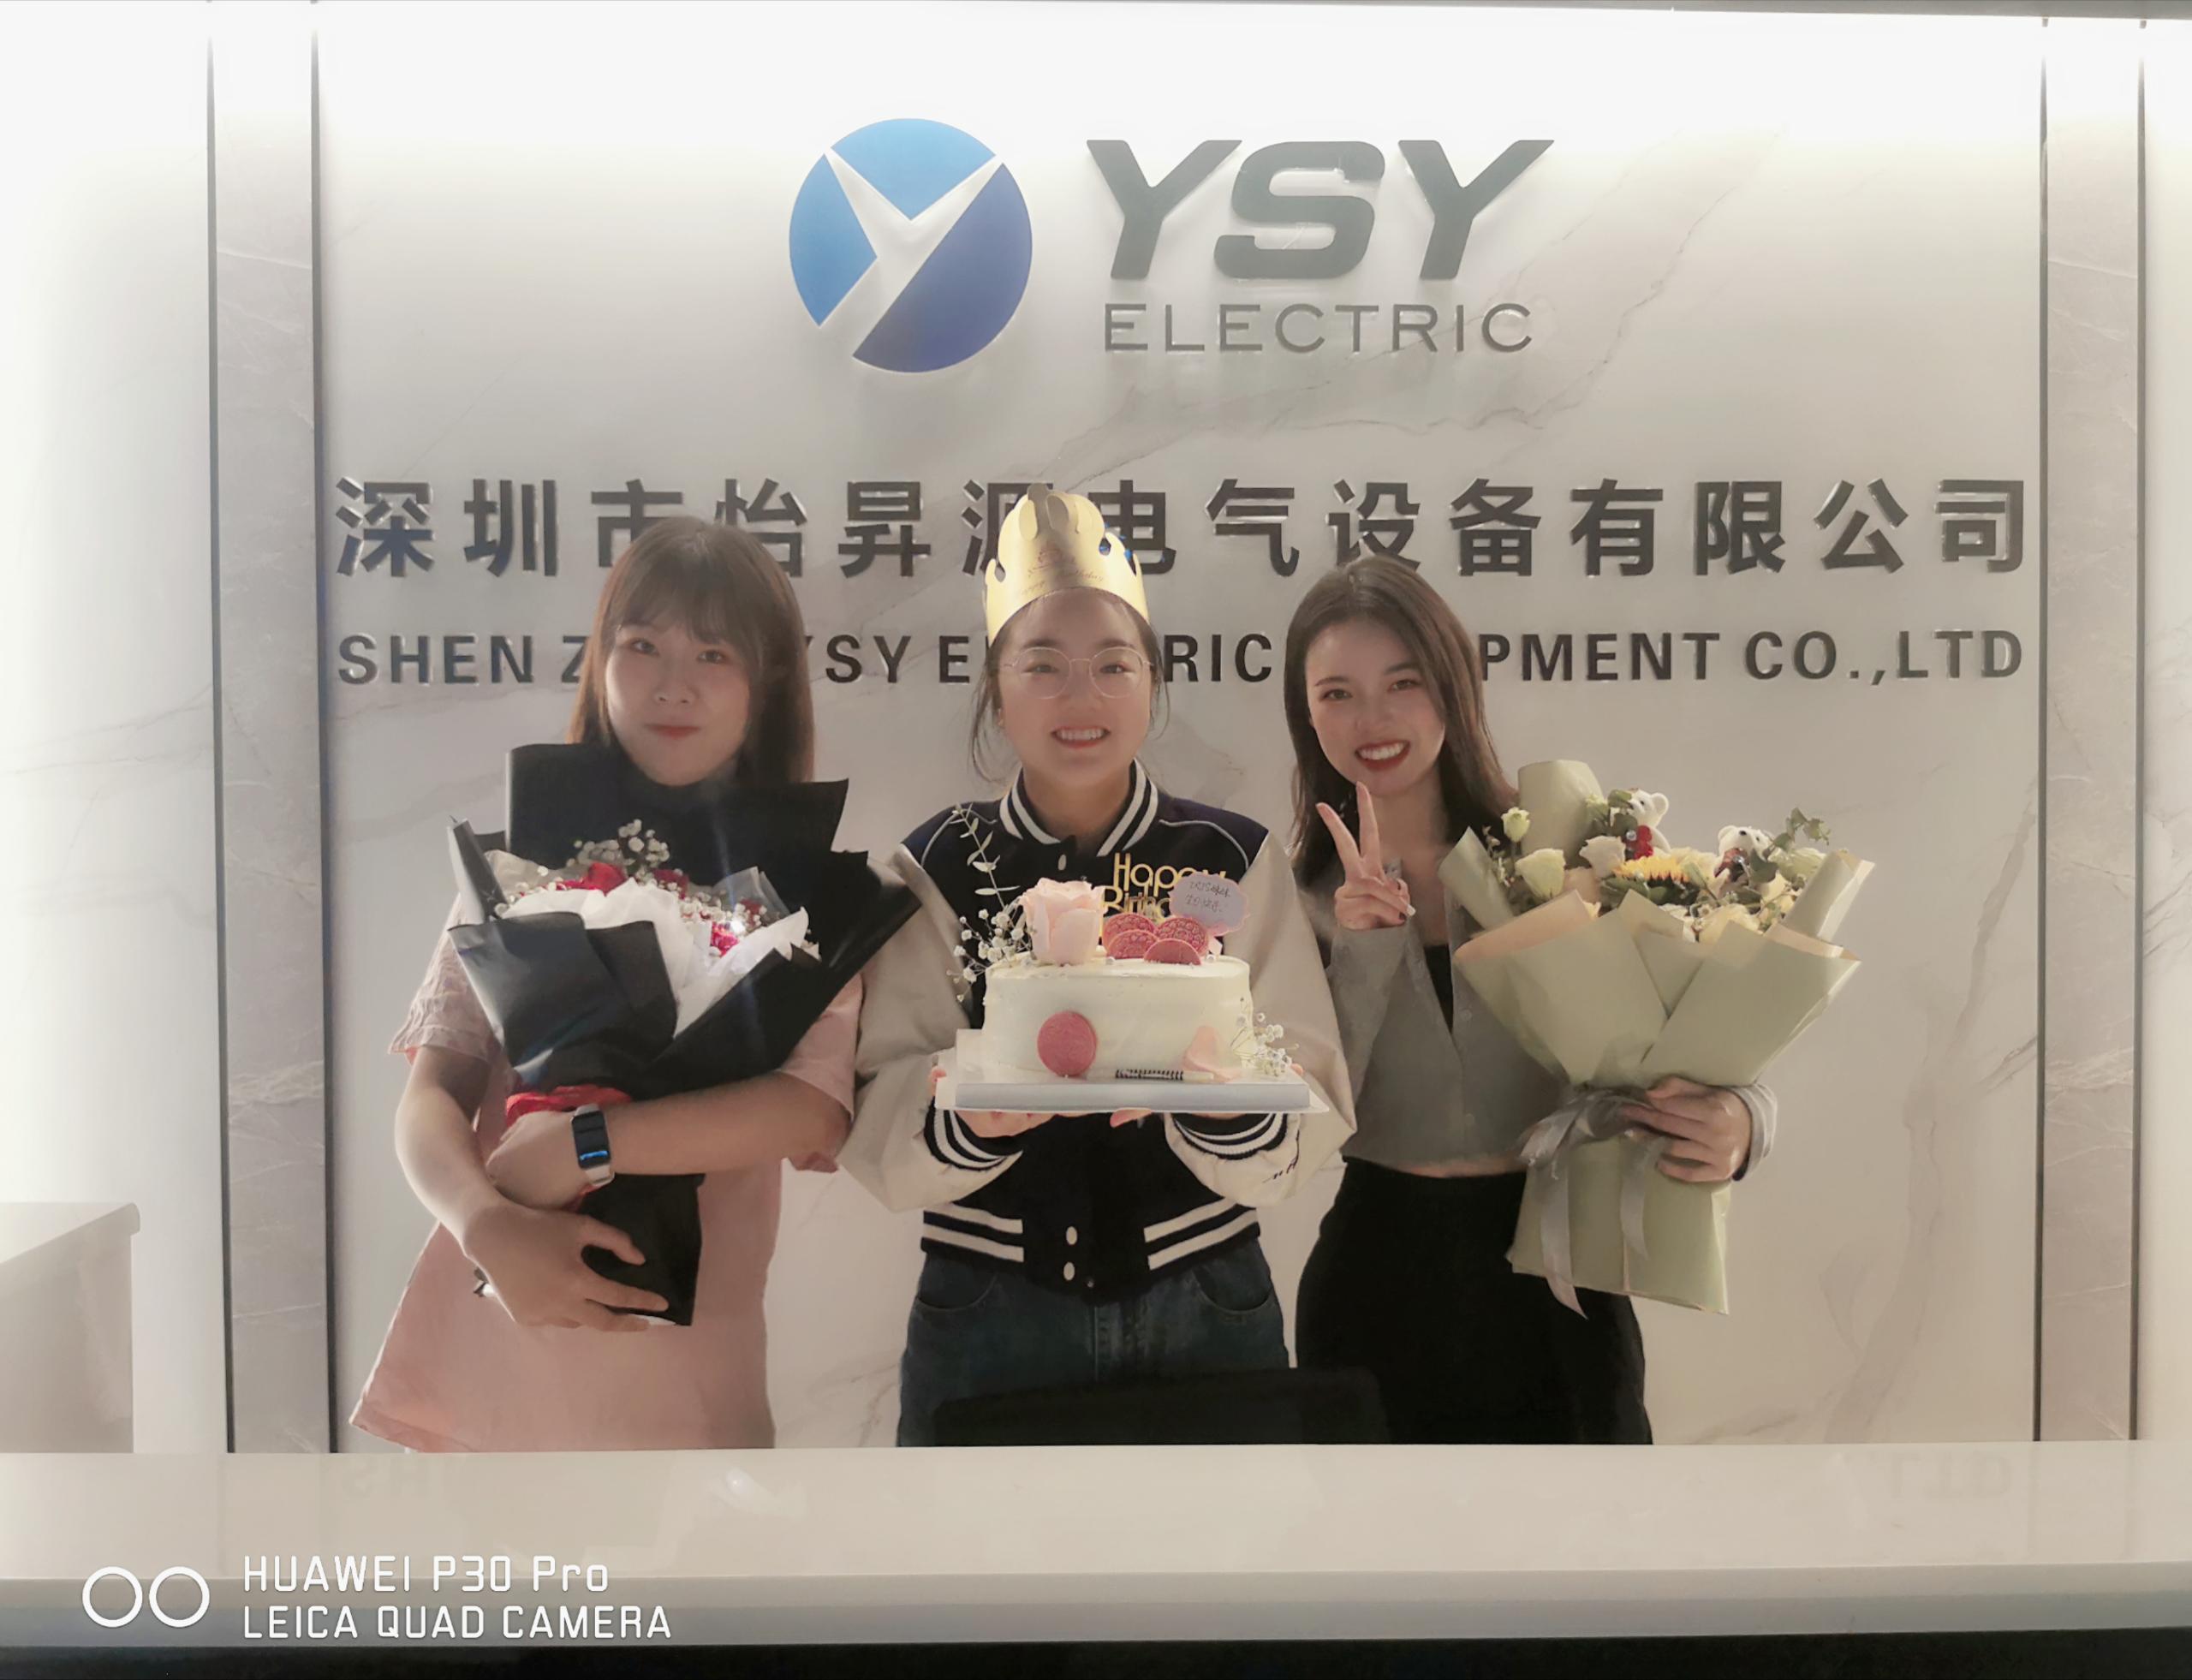 יום הולדת שמח ל-2 מכירות של YSY Electric!